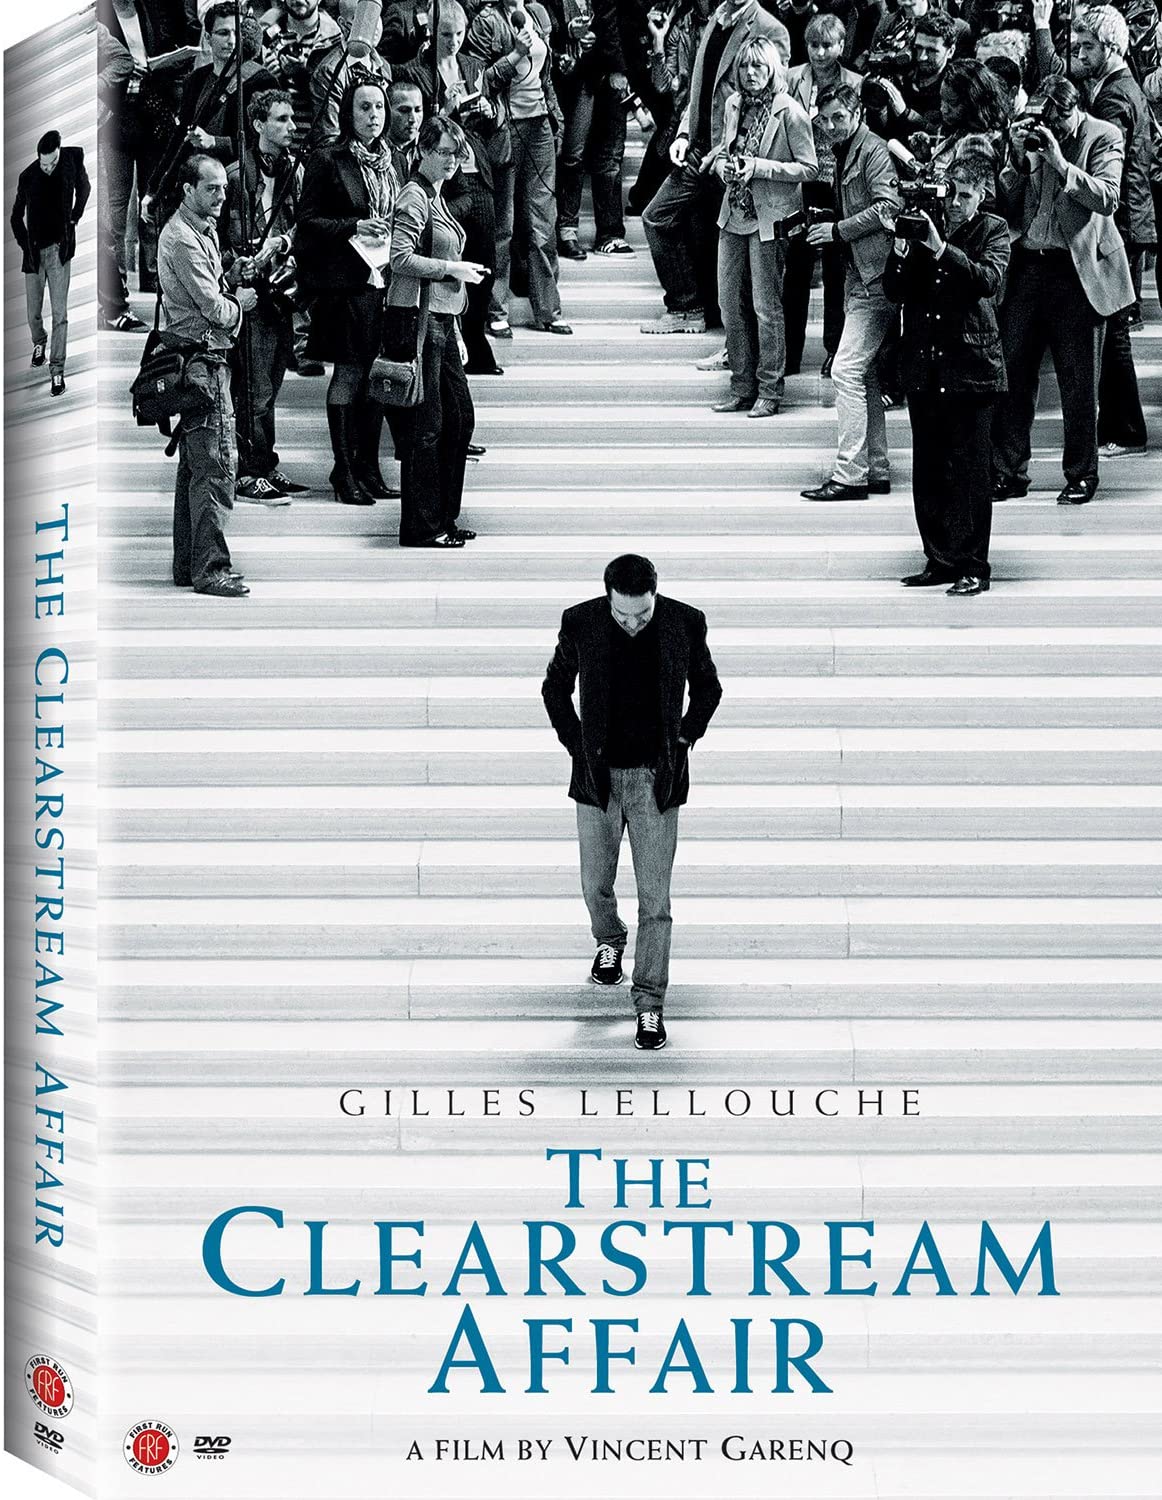 Stiahni si Filmy CZ/SK dabing Afera Clearstream / L'Enquete (2014)(CZ)[1080p] = CSFD 71%